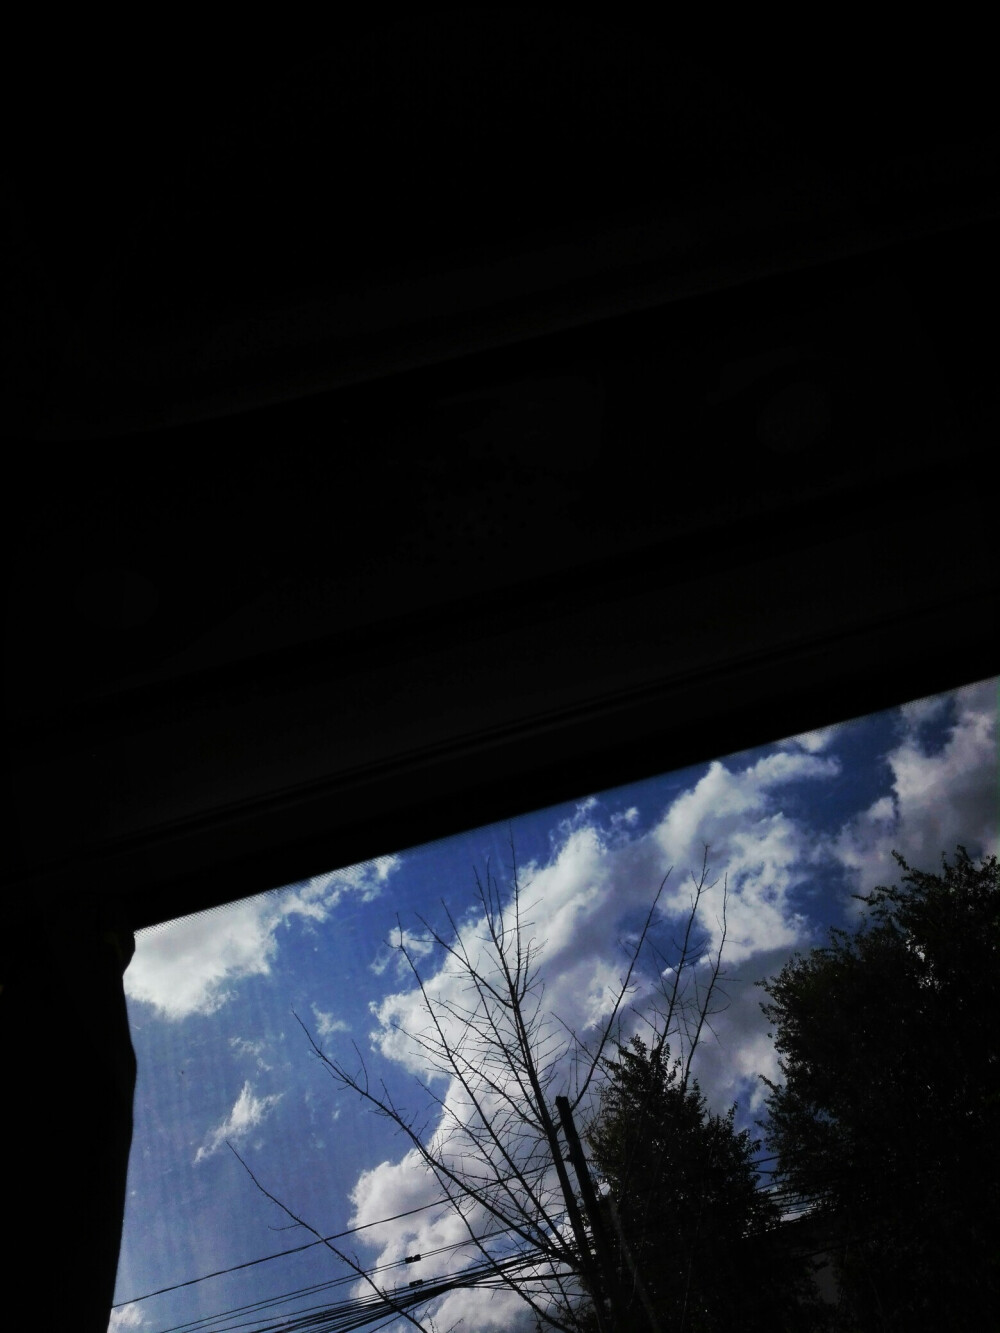 坐在车上拍窗外,觉得拍出了壁纸的感觉还挺好看